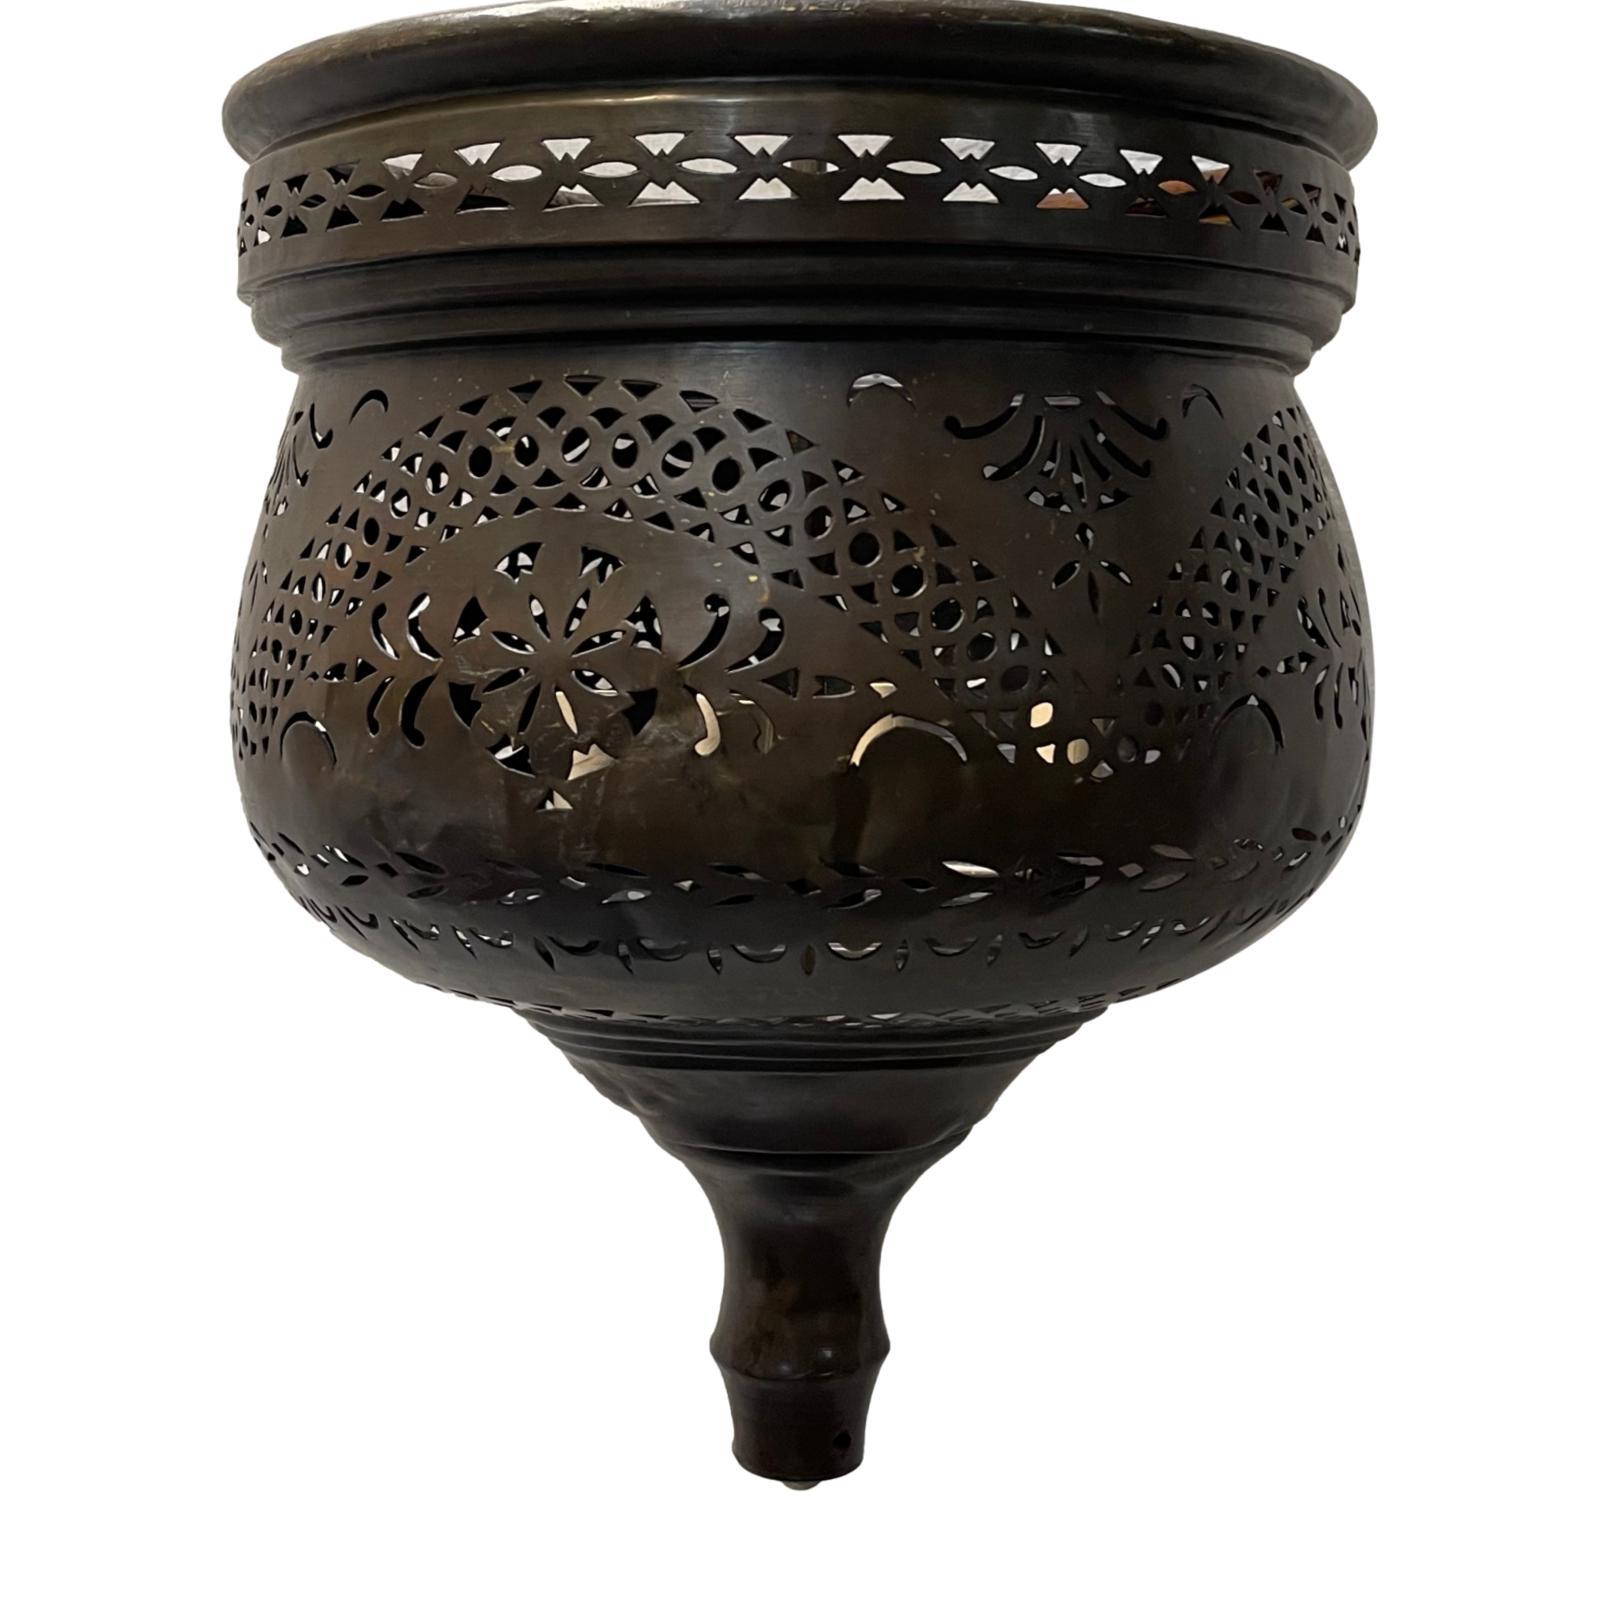 Eine antike persische Leuchte um 1900 mit vier Kandelabern im Inneren.

Abmessungen:
Fallhöhe: 26